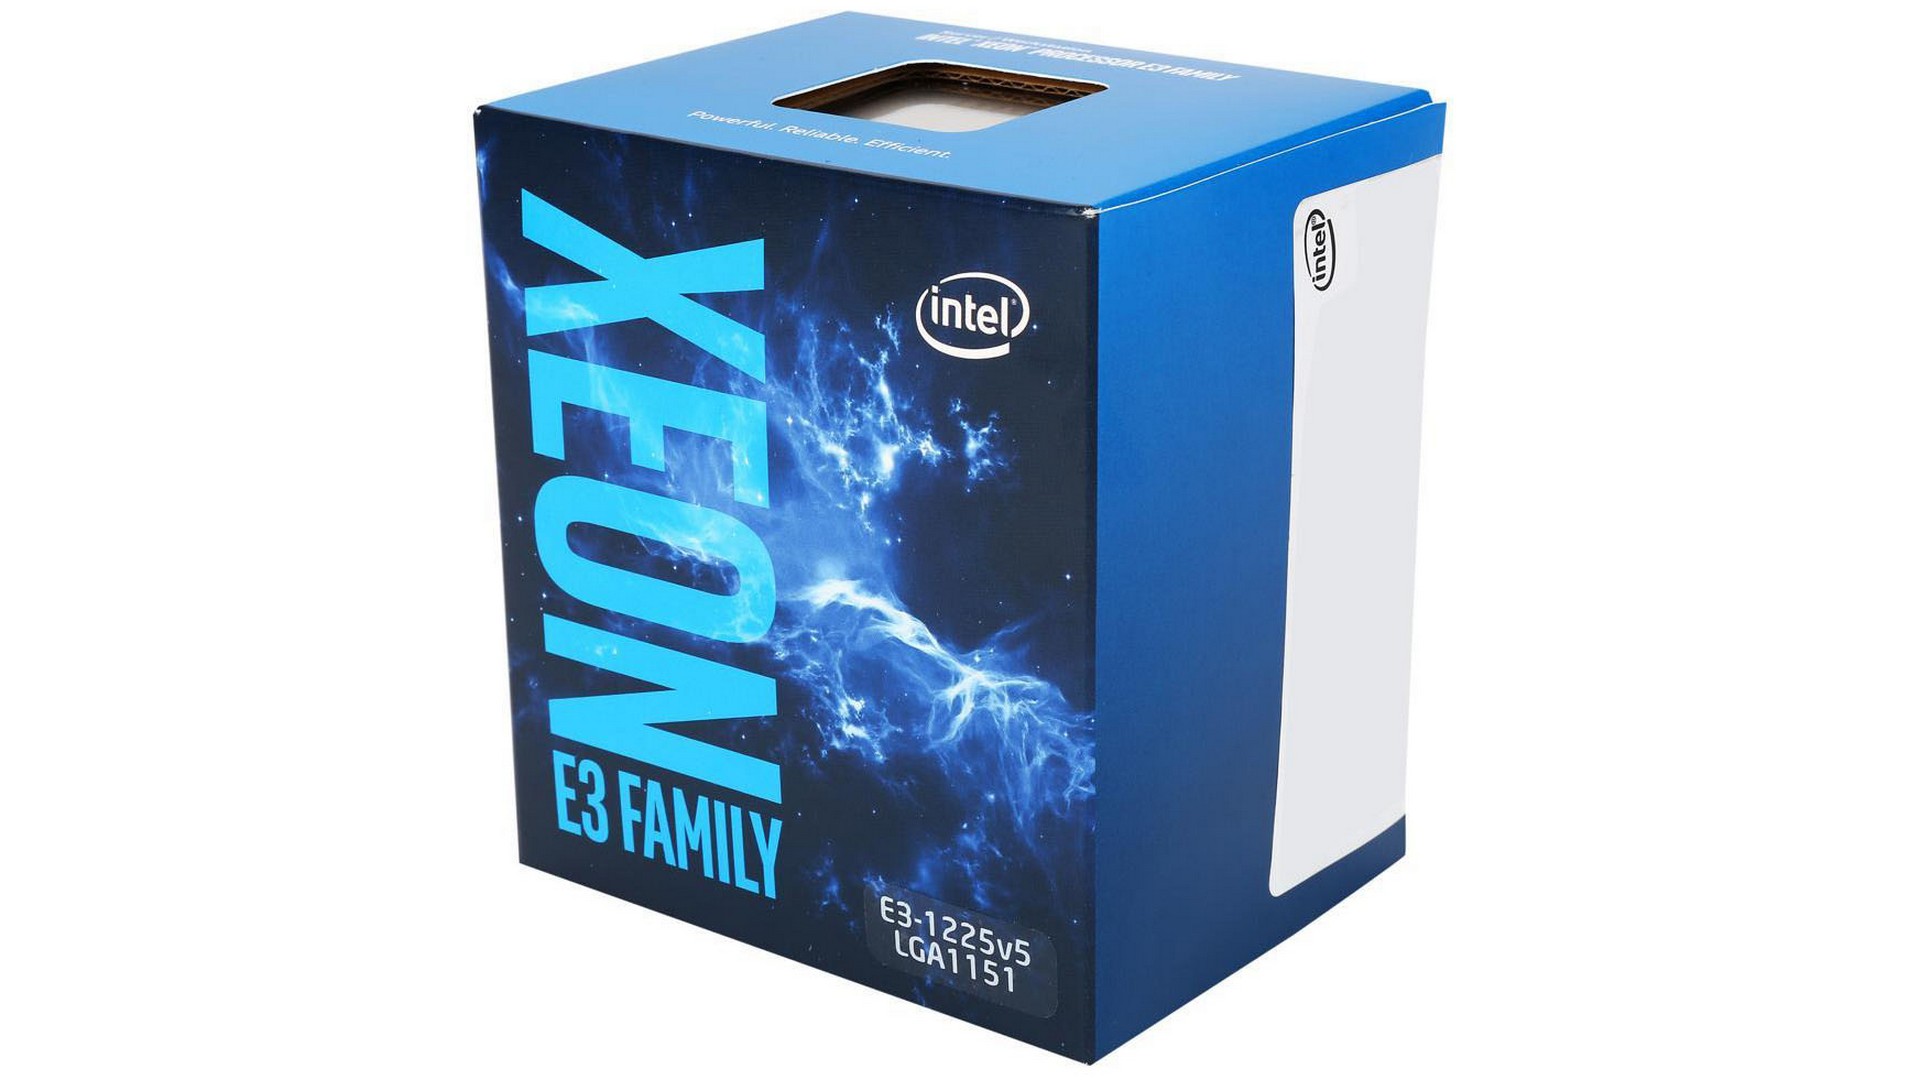 [CŨ] CPU Intel Xeon E3-1225 v5 (3.3GHz turbo 3.7GHz, 4 nhân 4 luồng, 8MB Cache, 80W) - Socket LGA 1151